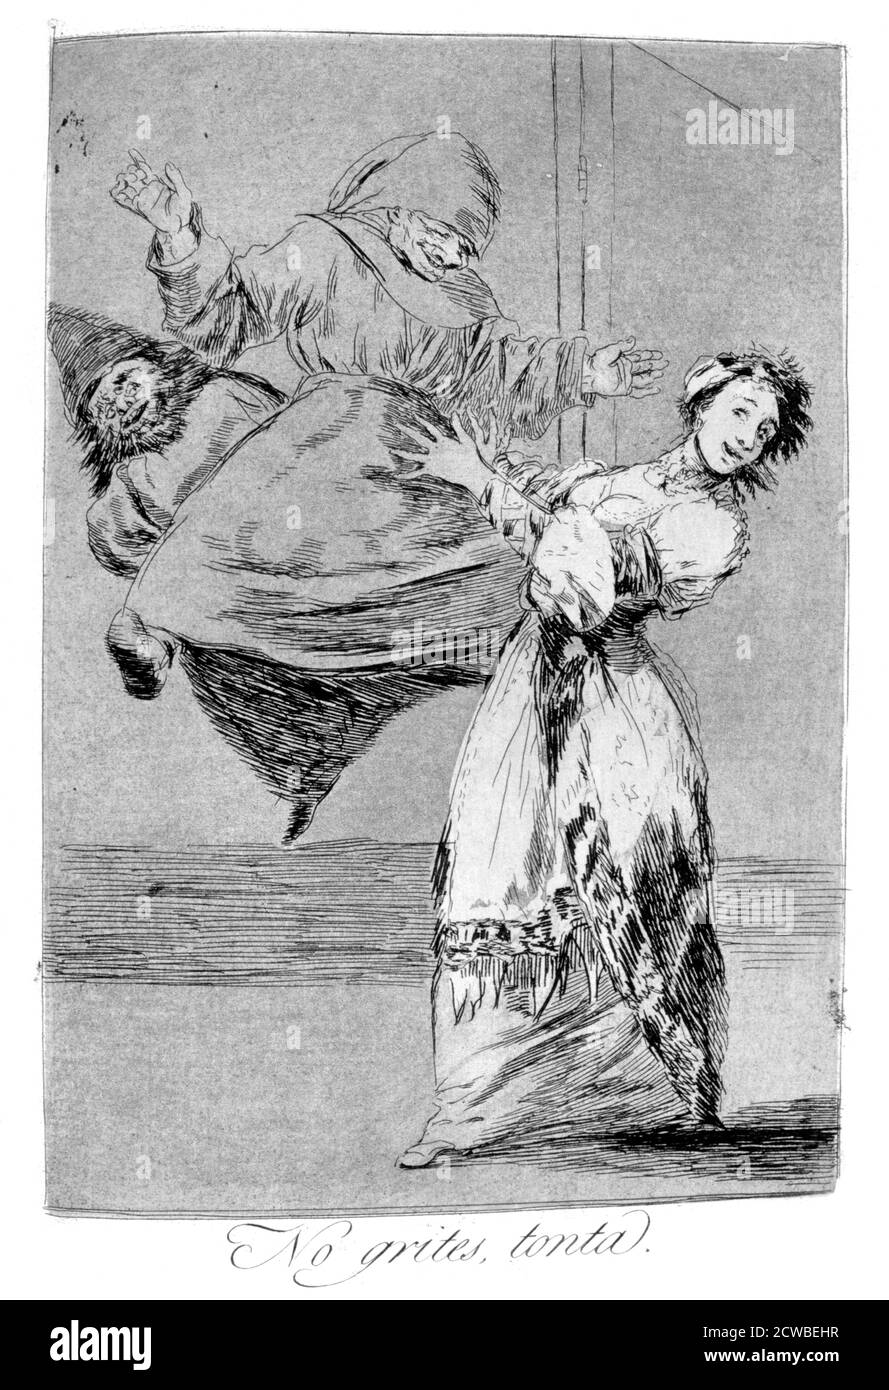 Ne criez pas vous idiot', 1799 artiste: Francisco Goya. Publié dans 'Los Caprichos'. Los Caprichos est un ensemble de 80 tirages en aquatinte et gravure créés par l'artiste espagnol Francisco Goya en 1797 et 1798, et publiés comme un album en 1799. Banque D'Images